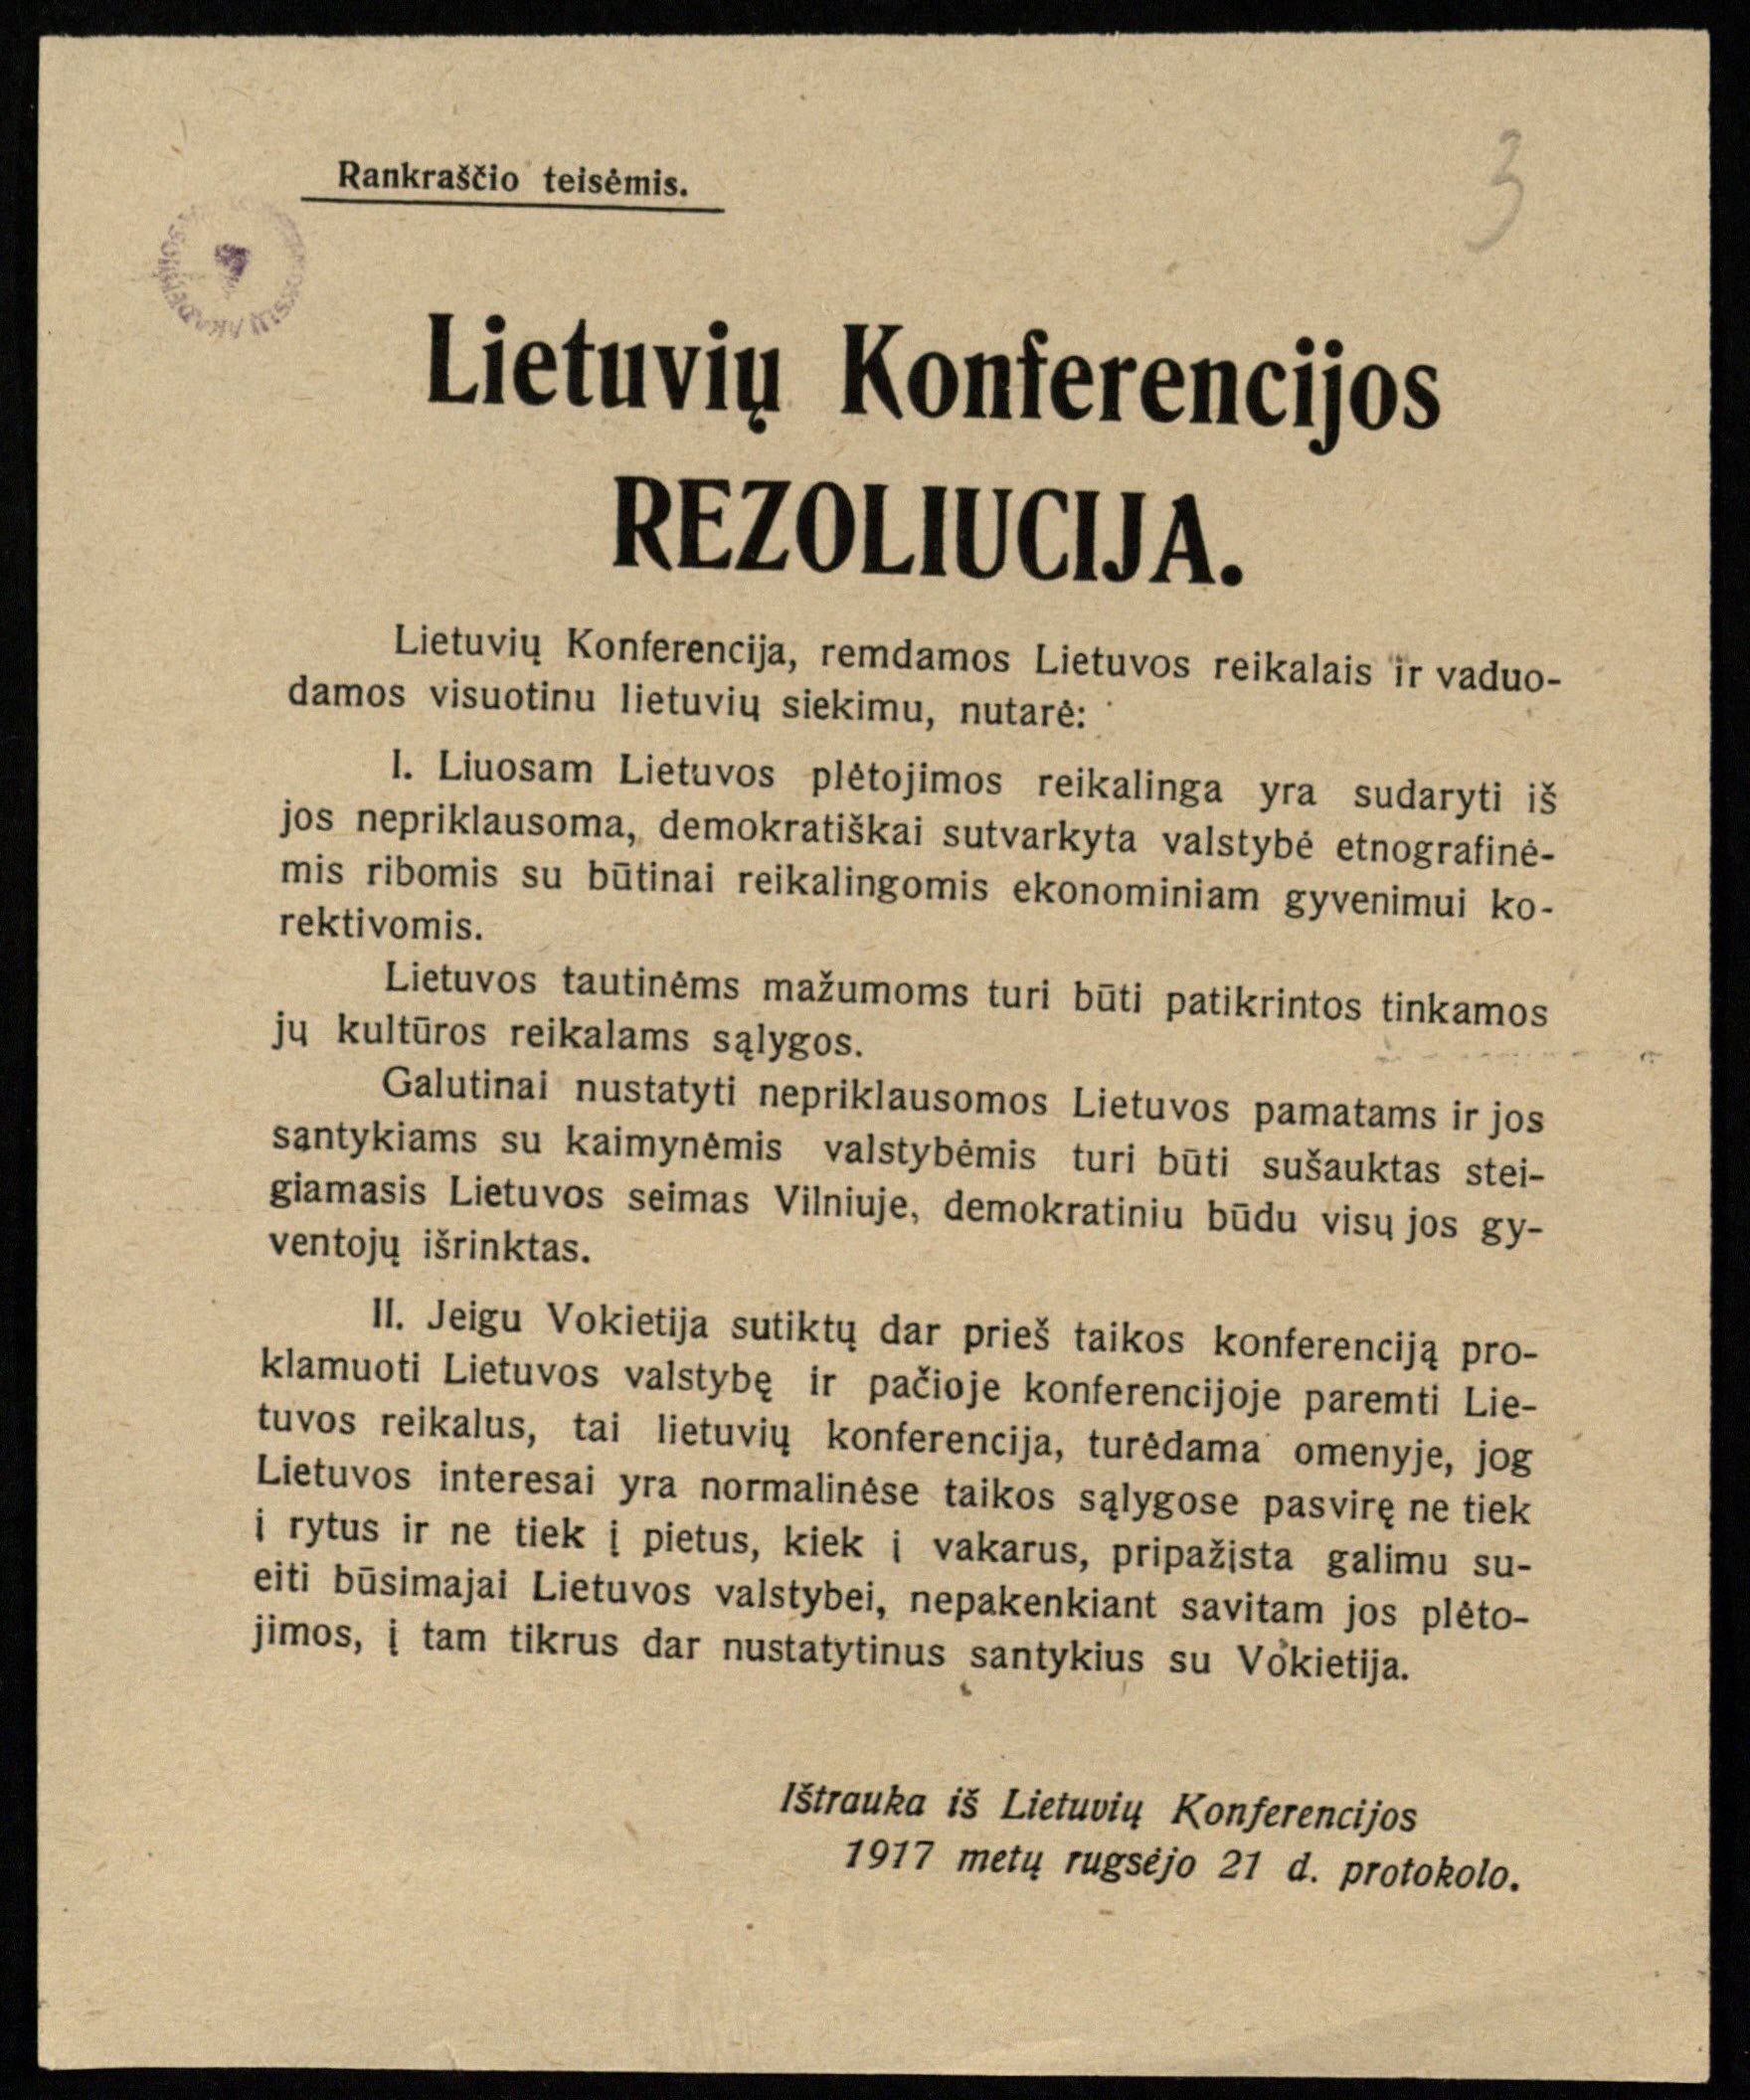 Lietuvių konferencijos rezoliucija. Ištrauka iš Lietuvių konferencijos 1917 metų rugsėjo 21 d. protokolo. Spaudinys